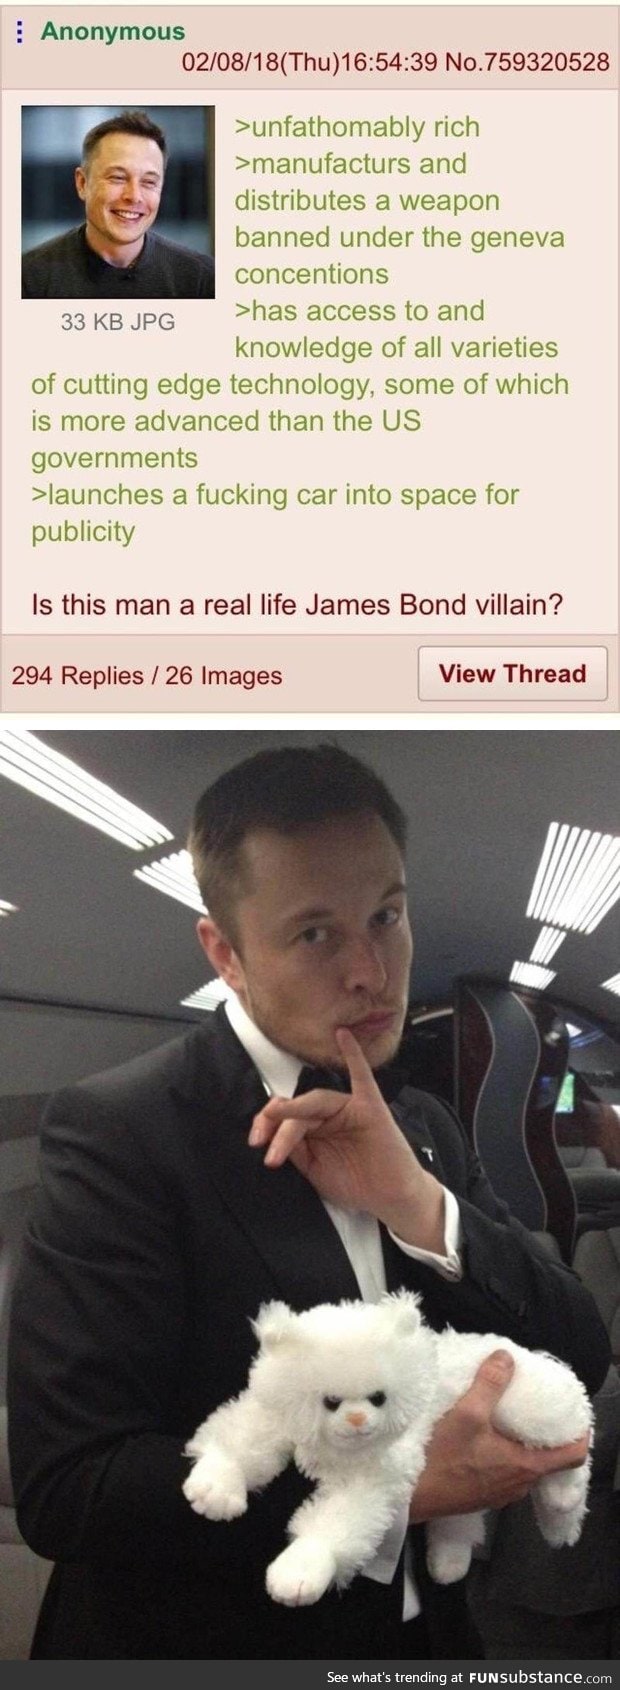 Mr. Elon musk